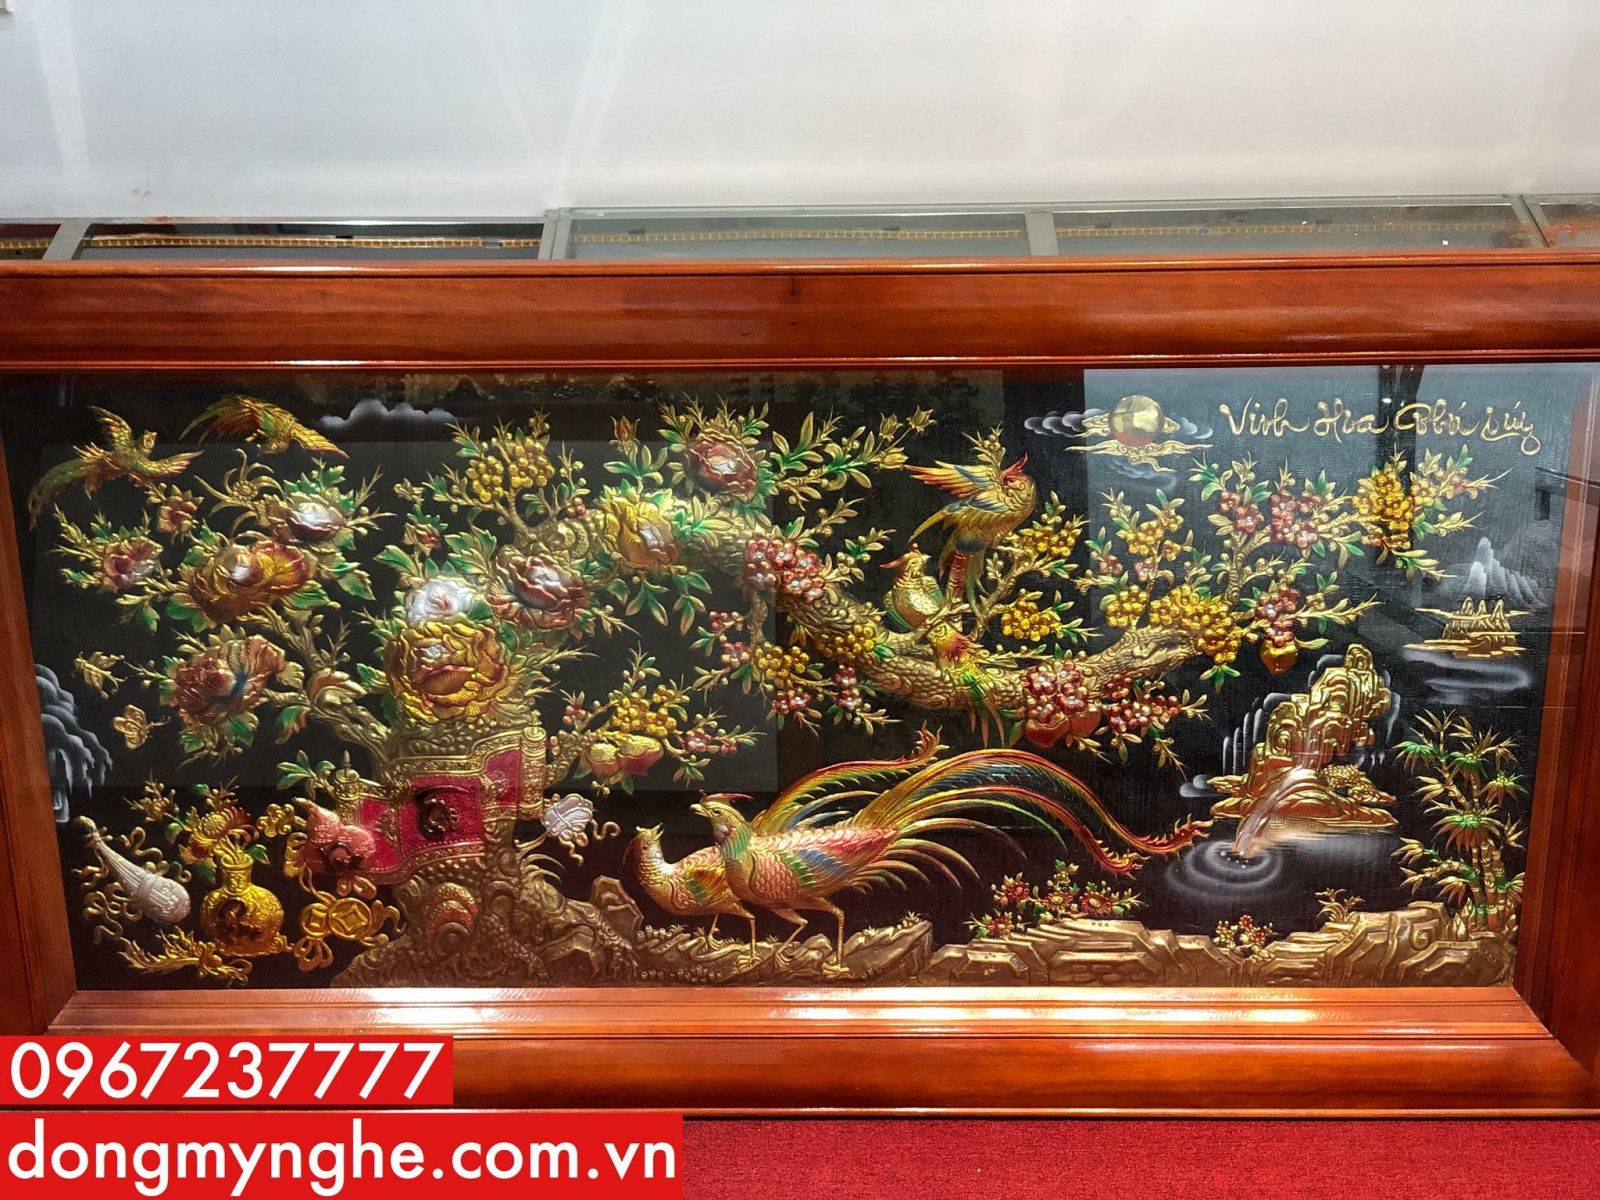 Bức tranh đồng Vinh Hoa Phú Quý cực đẹp tại Đúc Đồng Quang Hà